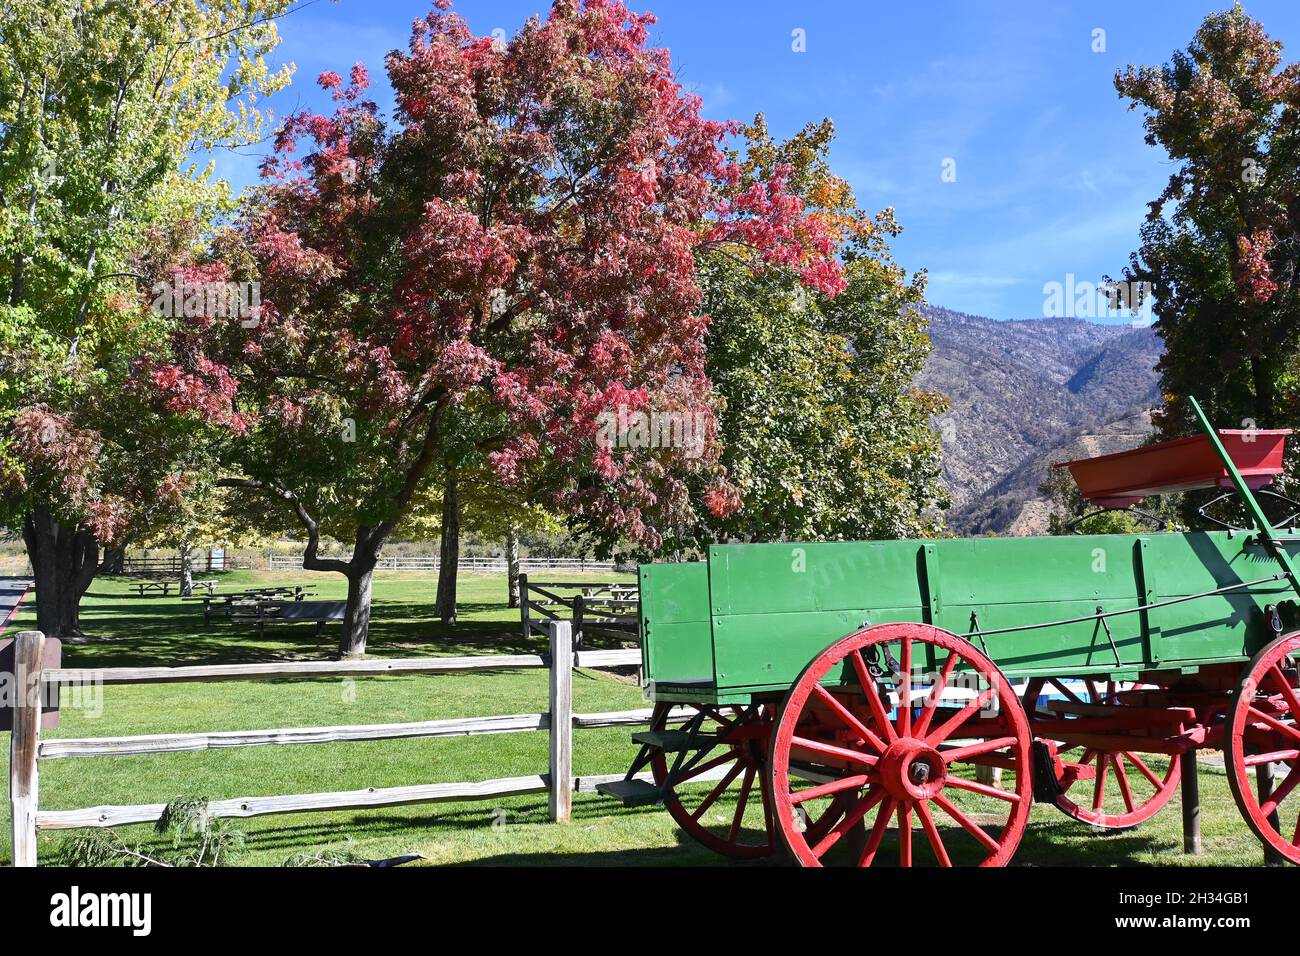 OAK GLEN, CALIFORNIA - 10 DE OCTUBRE de 2021: Colorido vagón y follaje de otoño en la entrada de Los Ríos Rancho, la granja de manzanas más grande del sur de California. Foto de stock